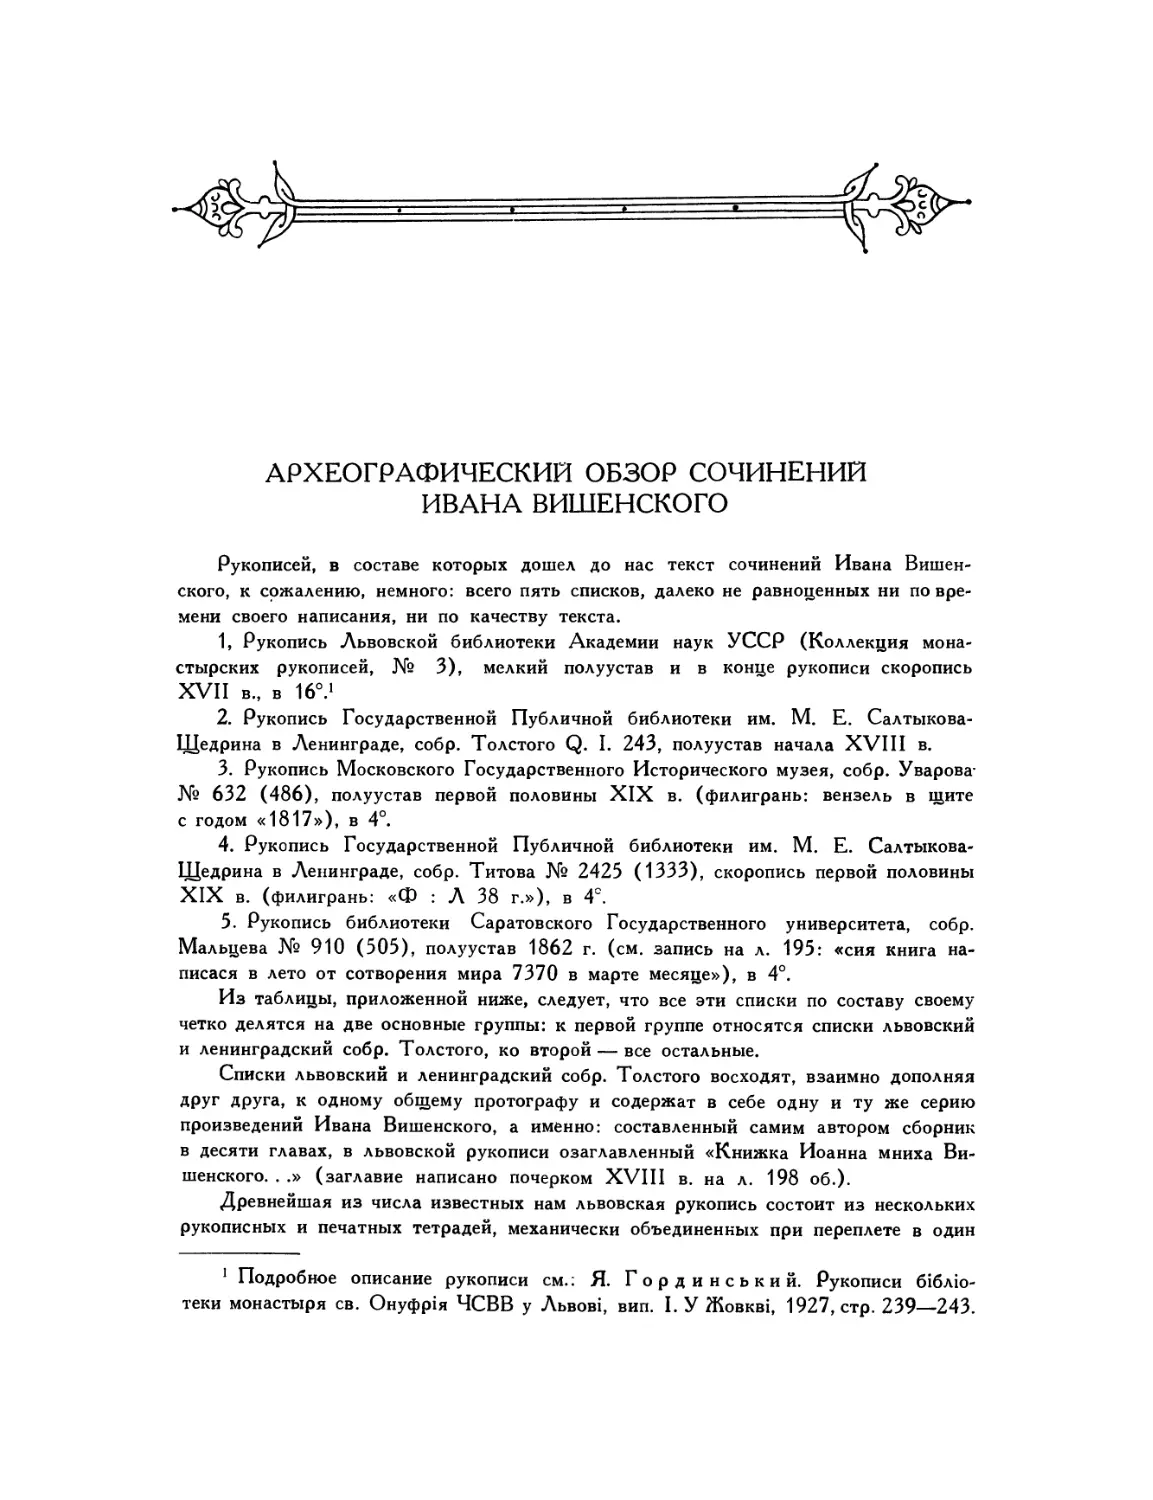 Археографический обзор сочинений Ивана Вишенского